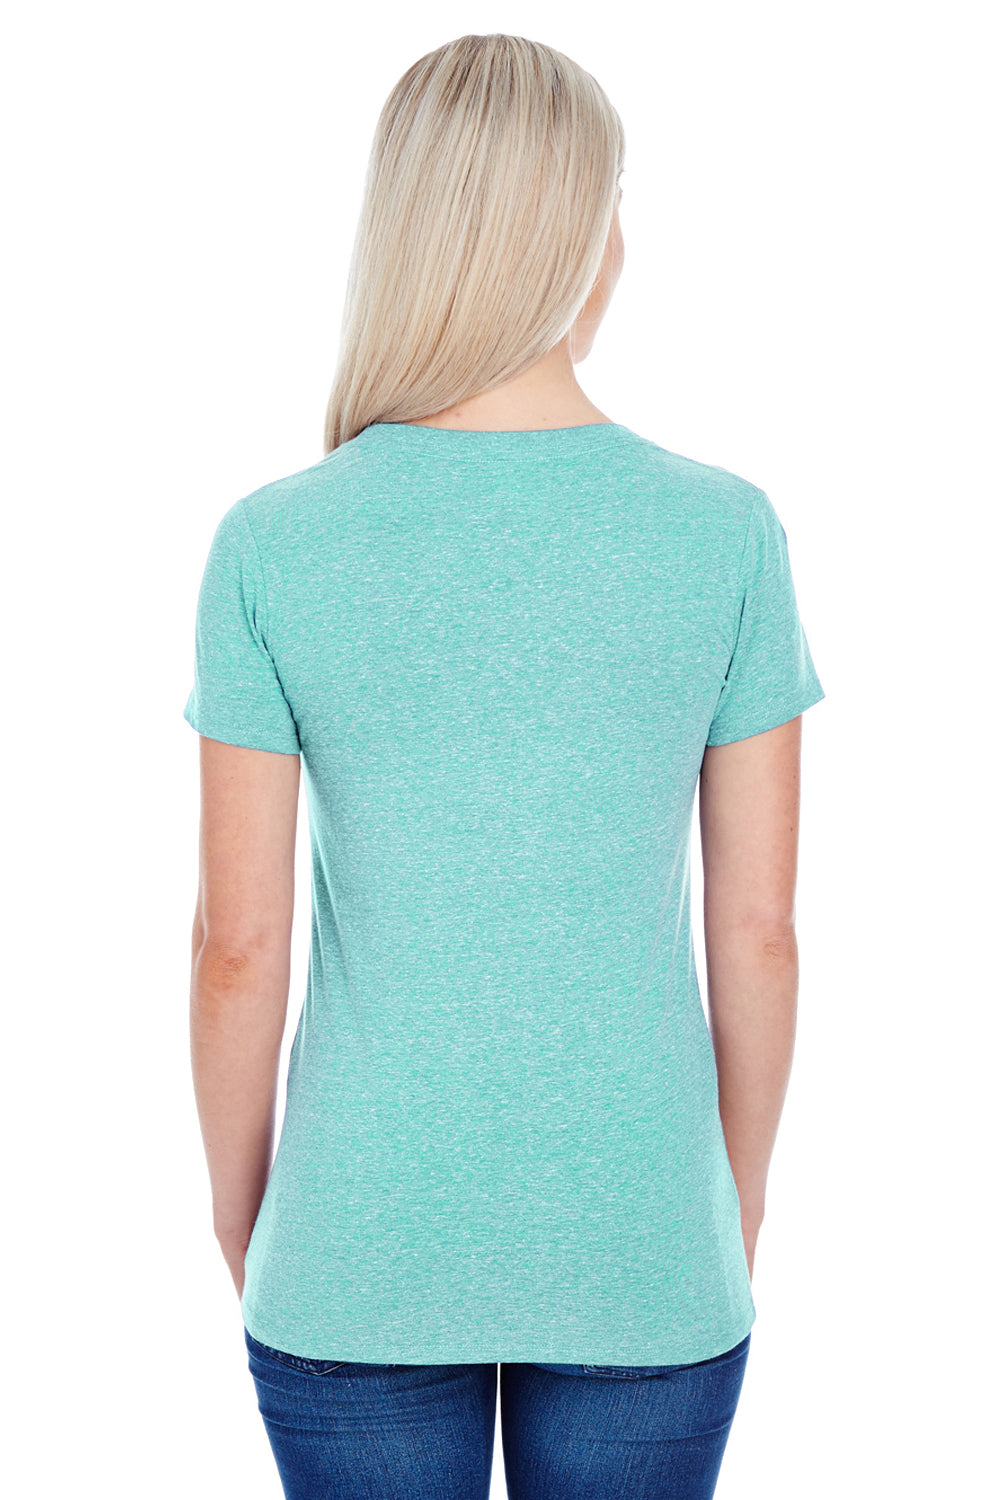 Threadfast Apparel 202A Womens Short Sleeve Crewneck T-Shirt Mint Green Back